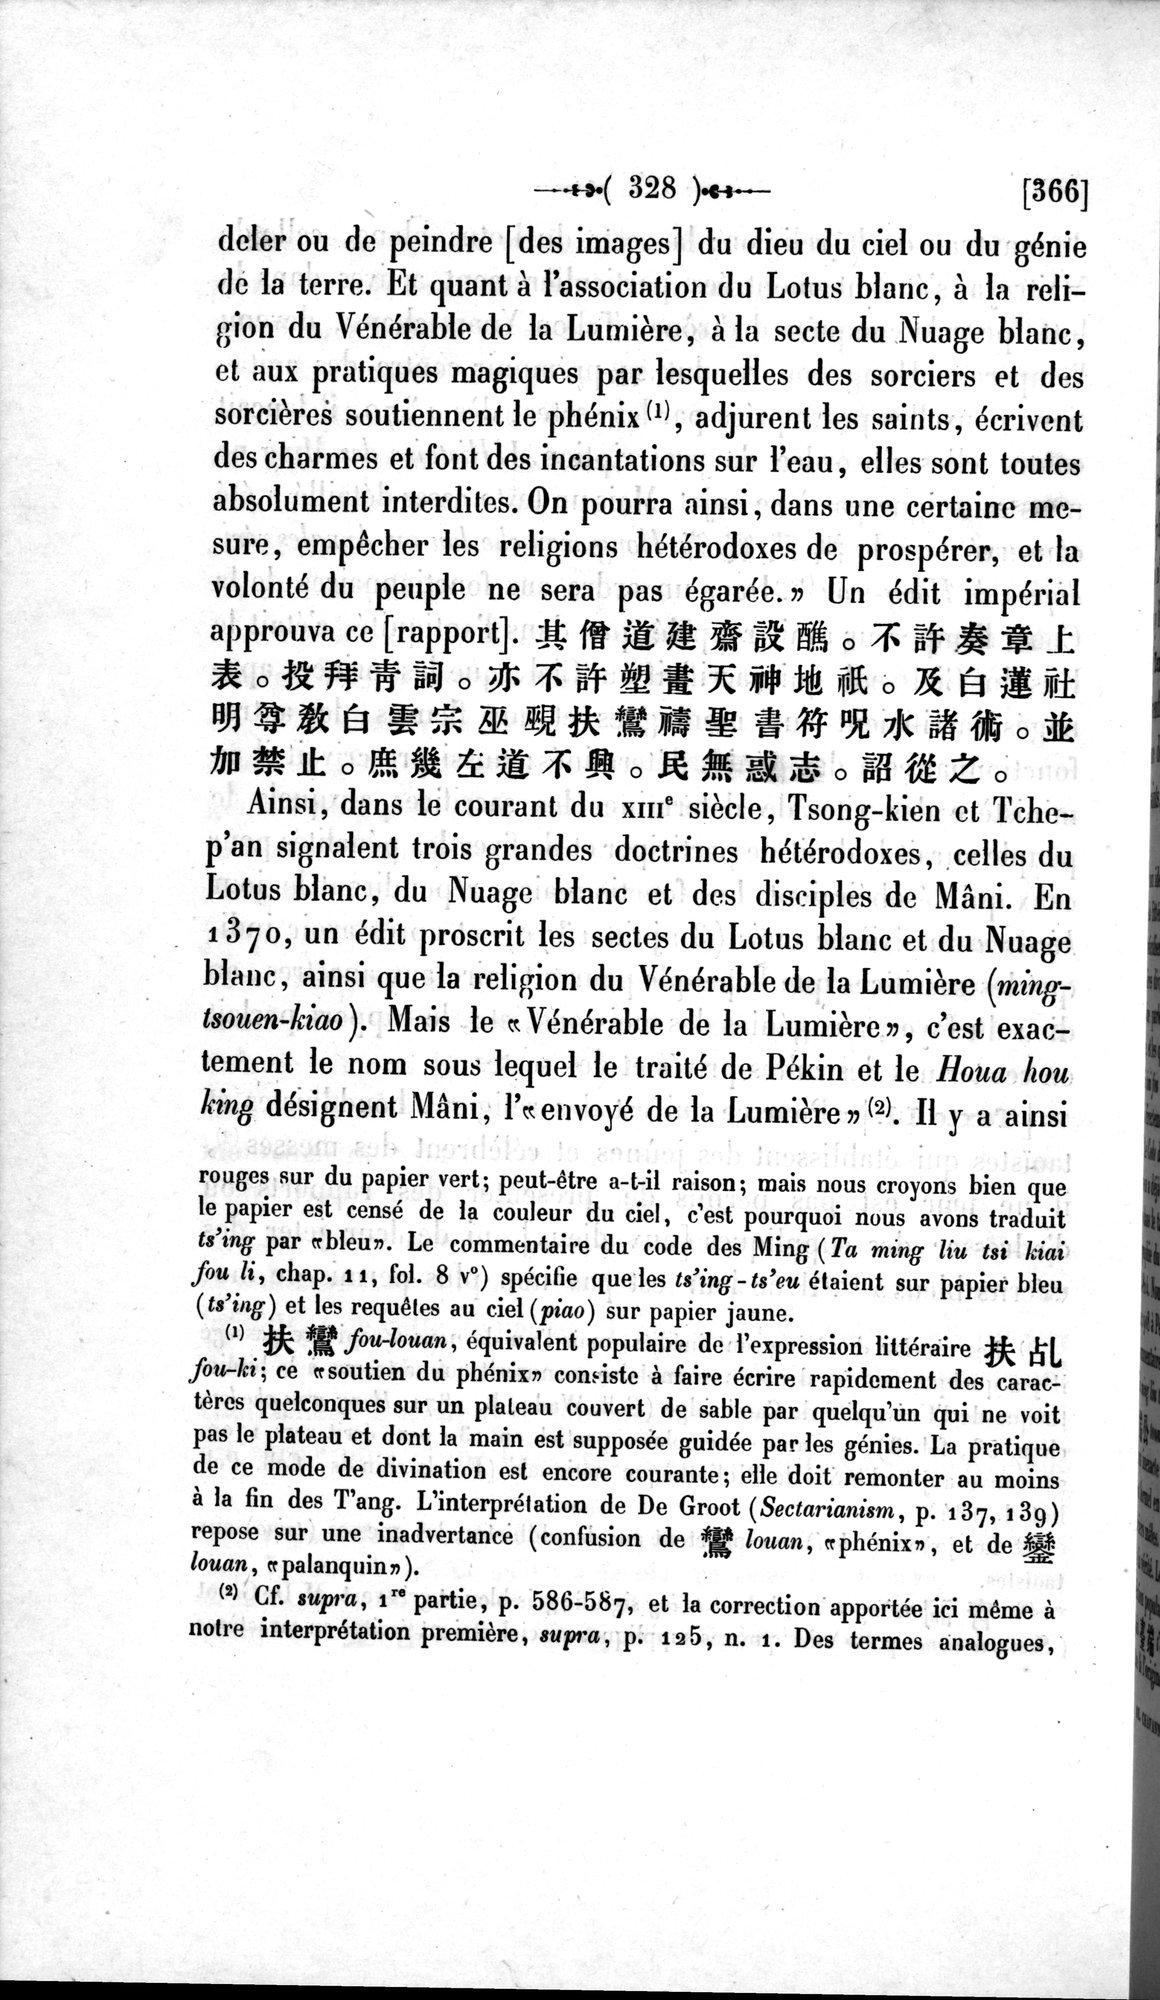 Un traité manichéen retrouvé en Chine : vol.1 / Page 338 (Grayscale High Resolution Image)